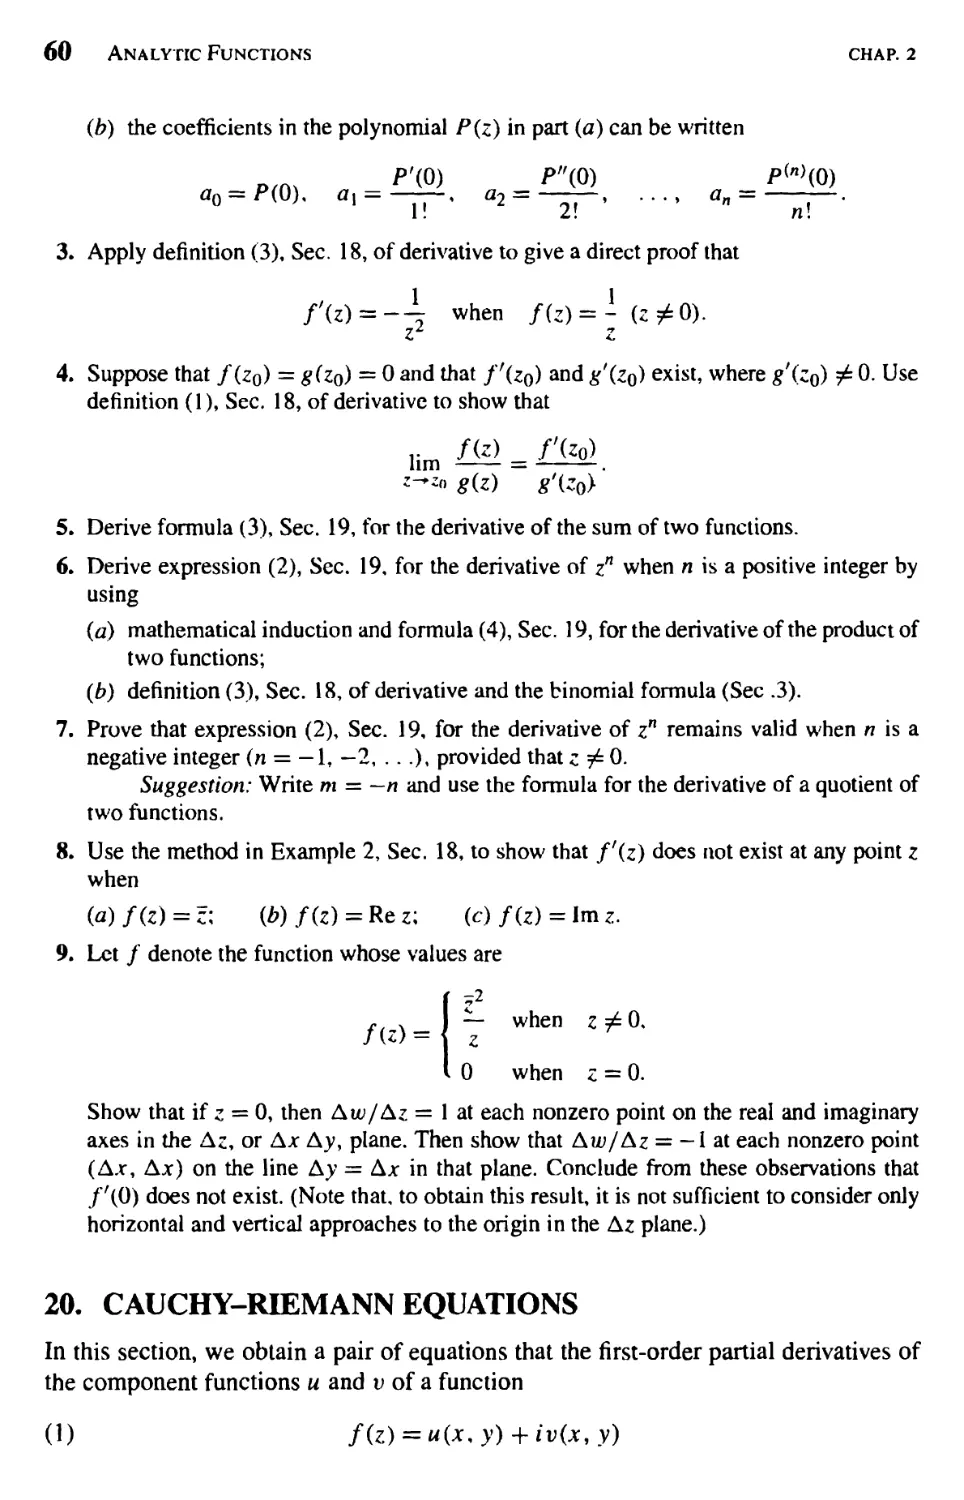 Cauchy-Riemann Equations